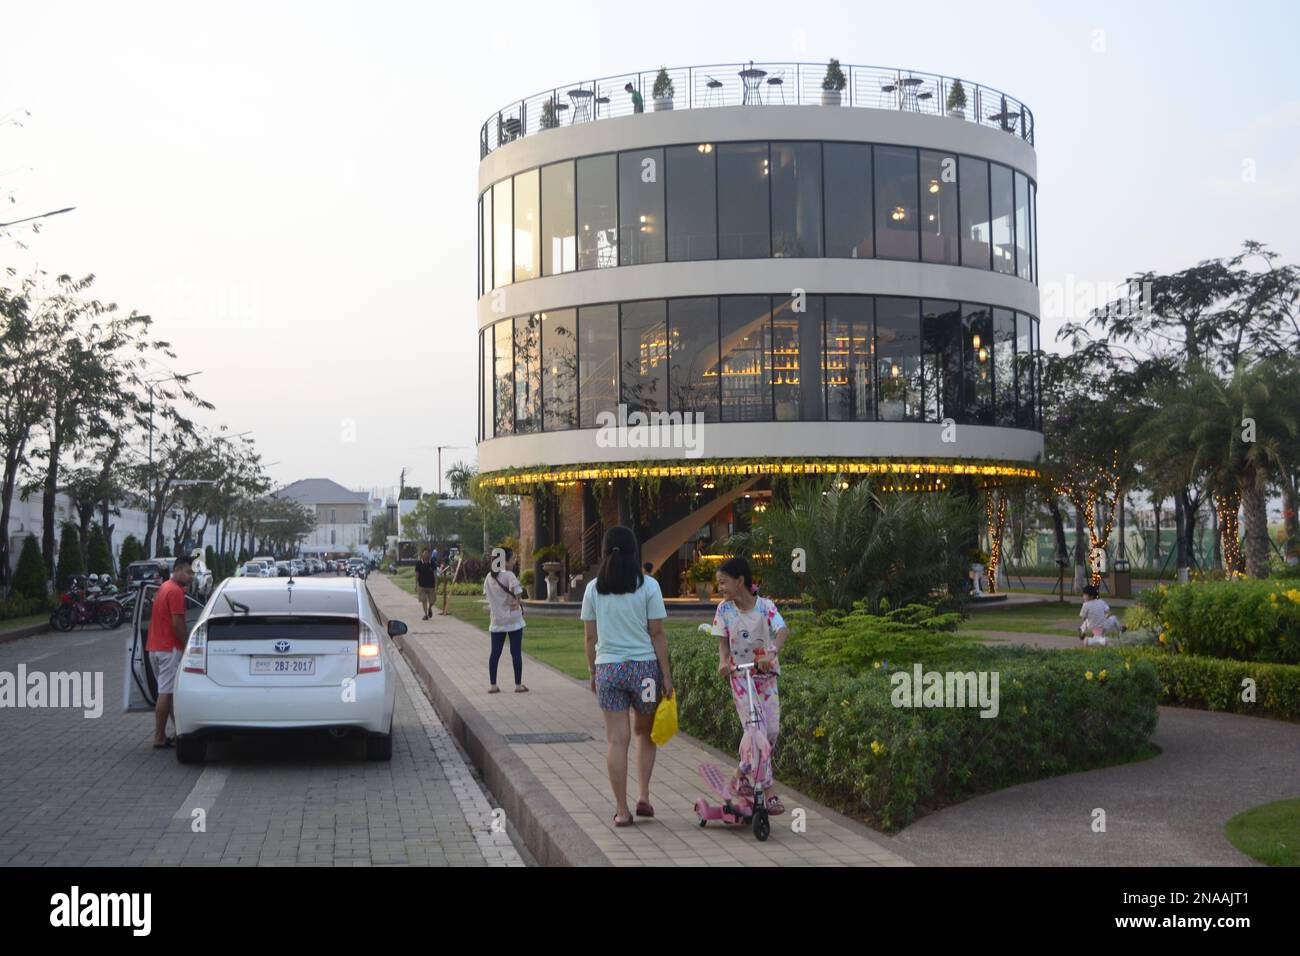 Familien auf abendlichem Spaziergang im kreisförmigen Restaurant Borey Peng Huoth, einem neuen Bauwerk in Phnom Penh, Kambodscha. Stockfoto